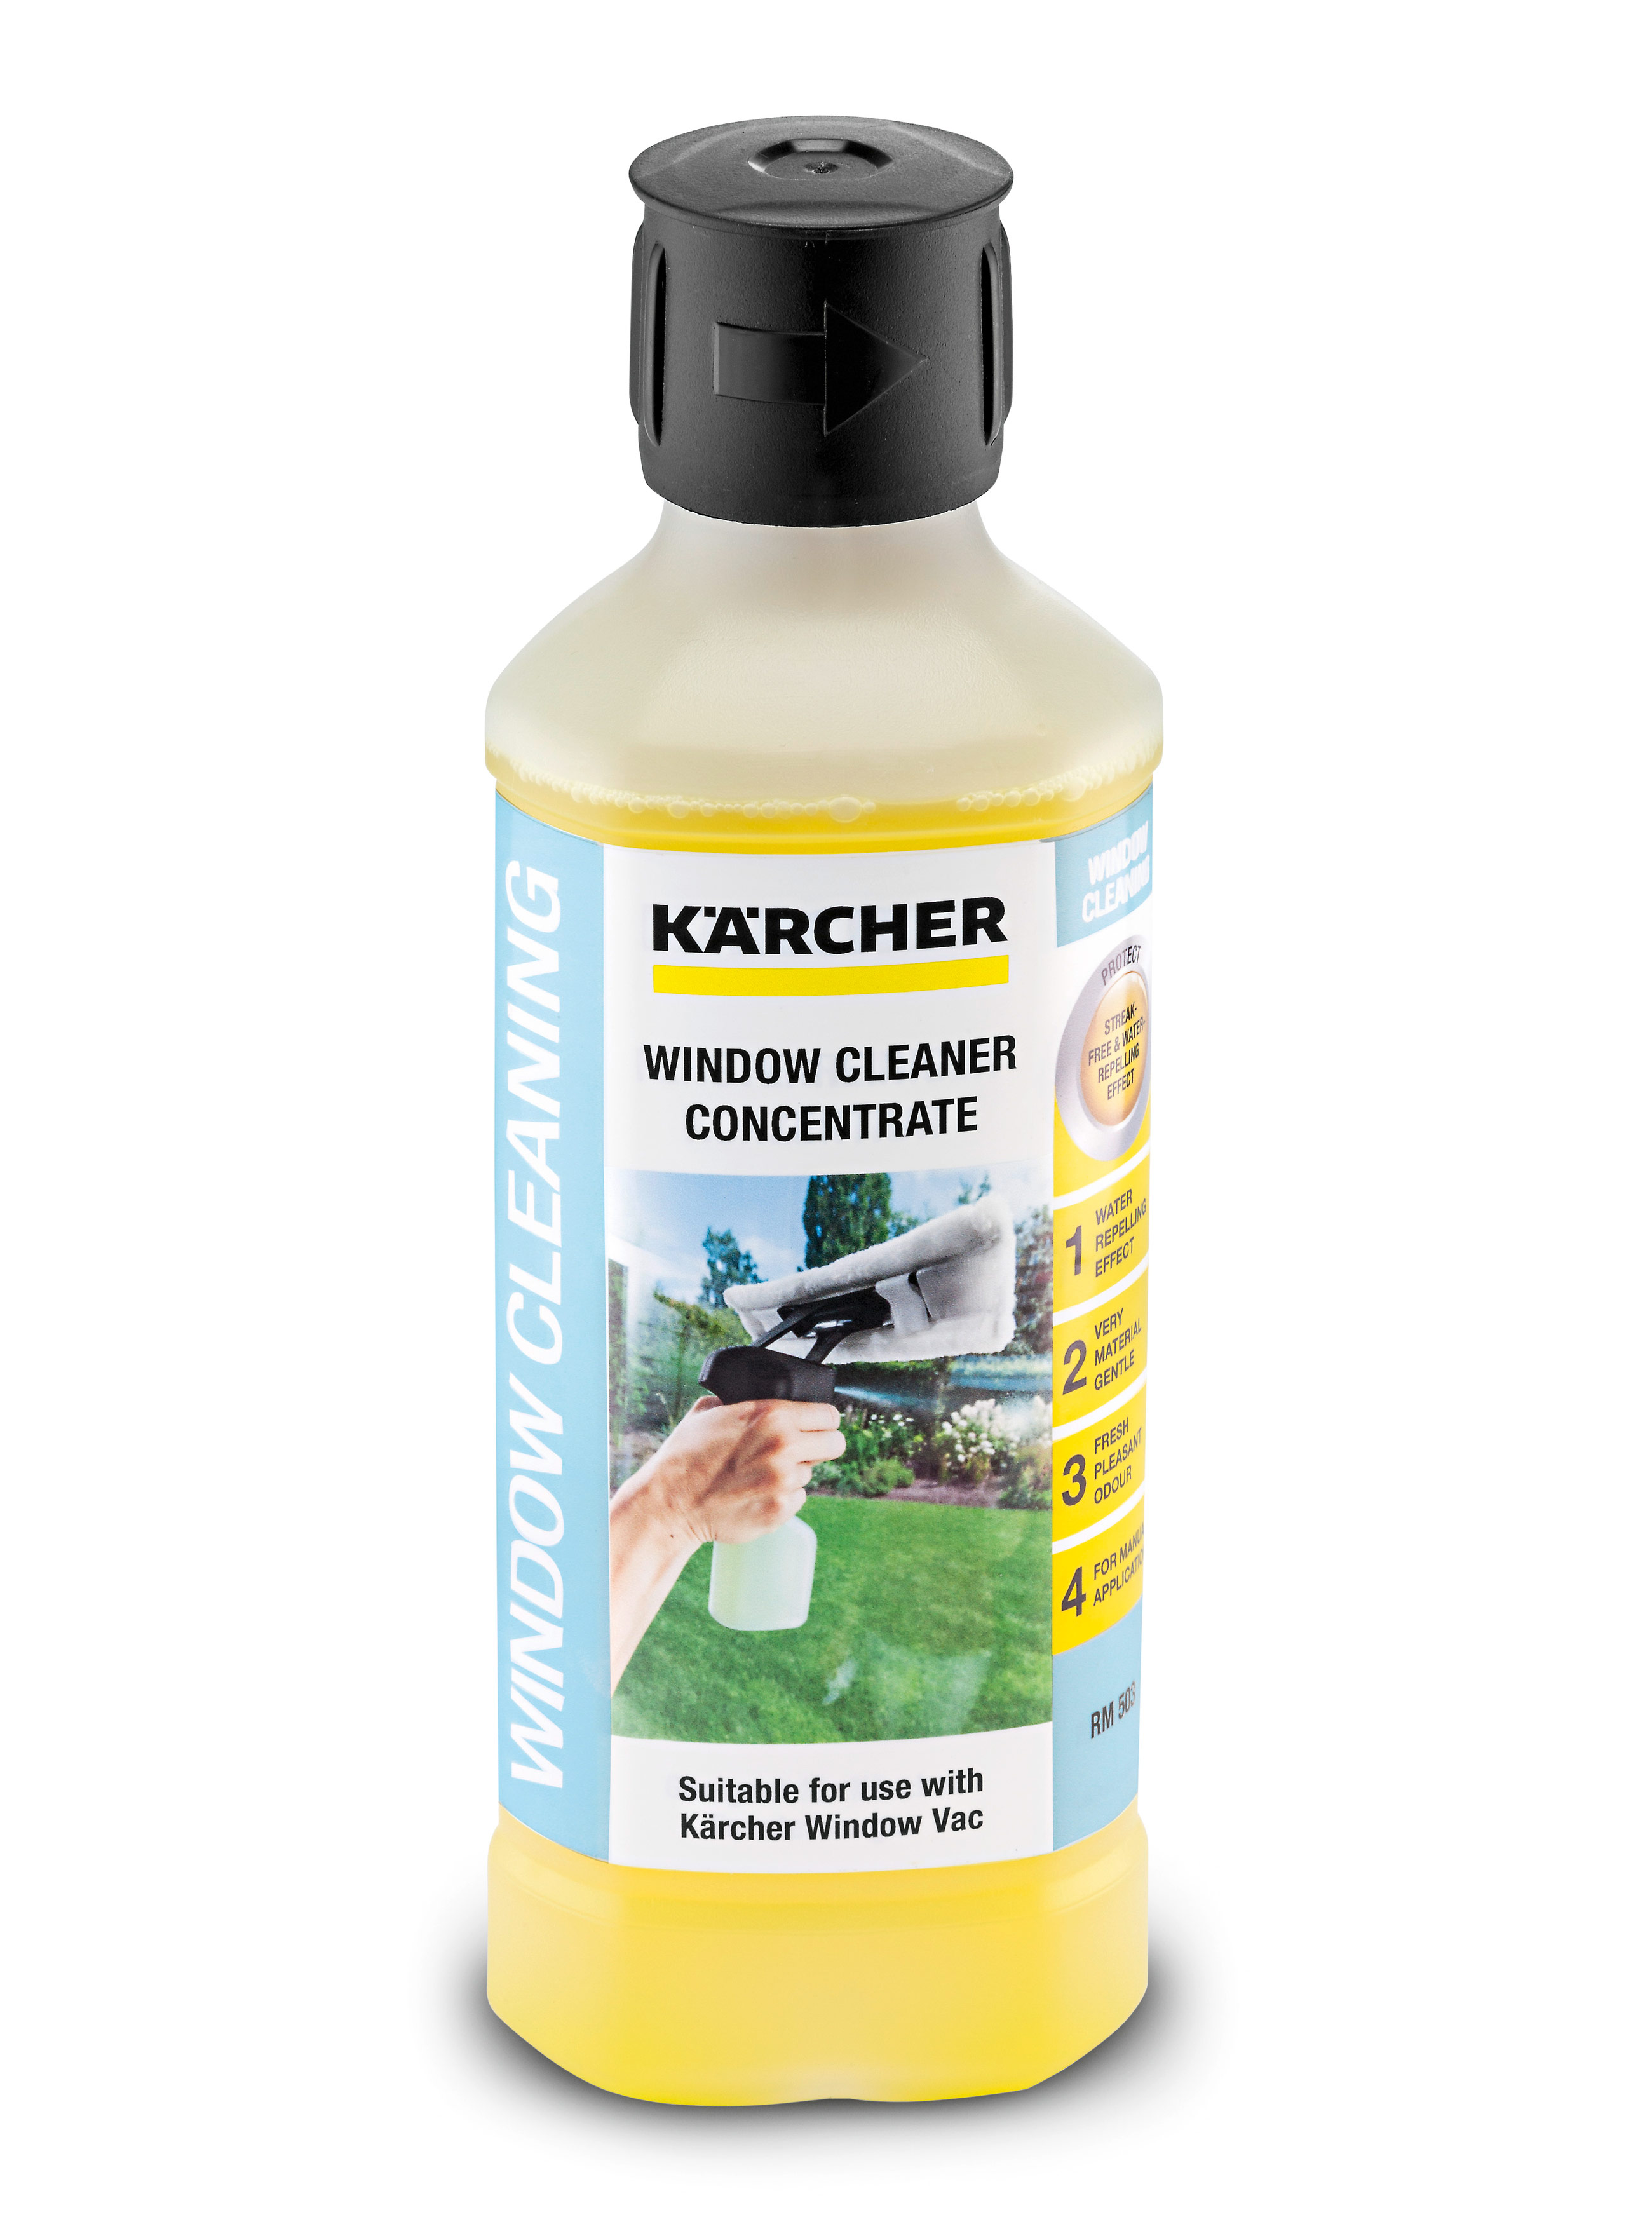 Жидкость для мытья окон Керхер (Karcher) 500 мл, RM 503: описание, цена .